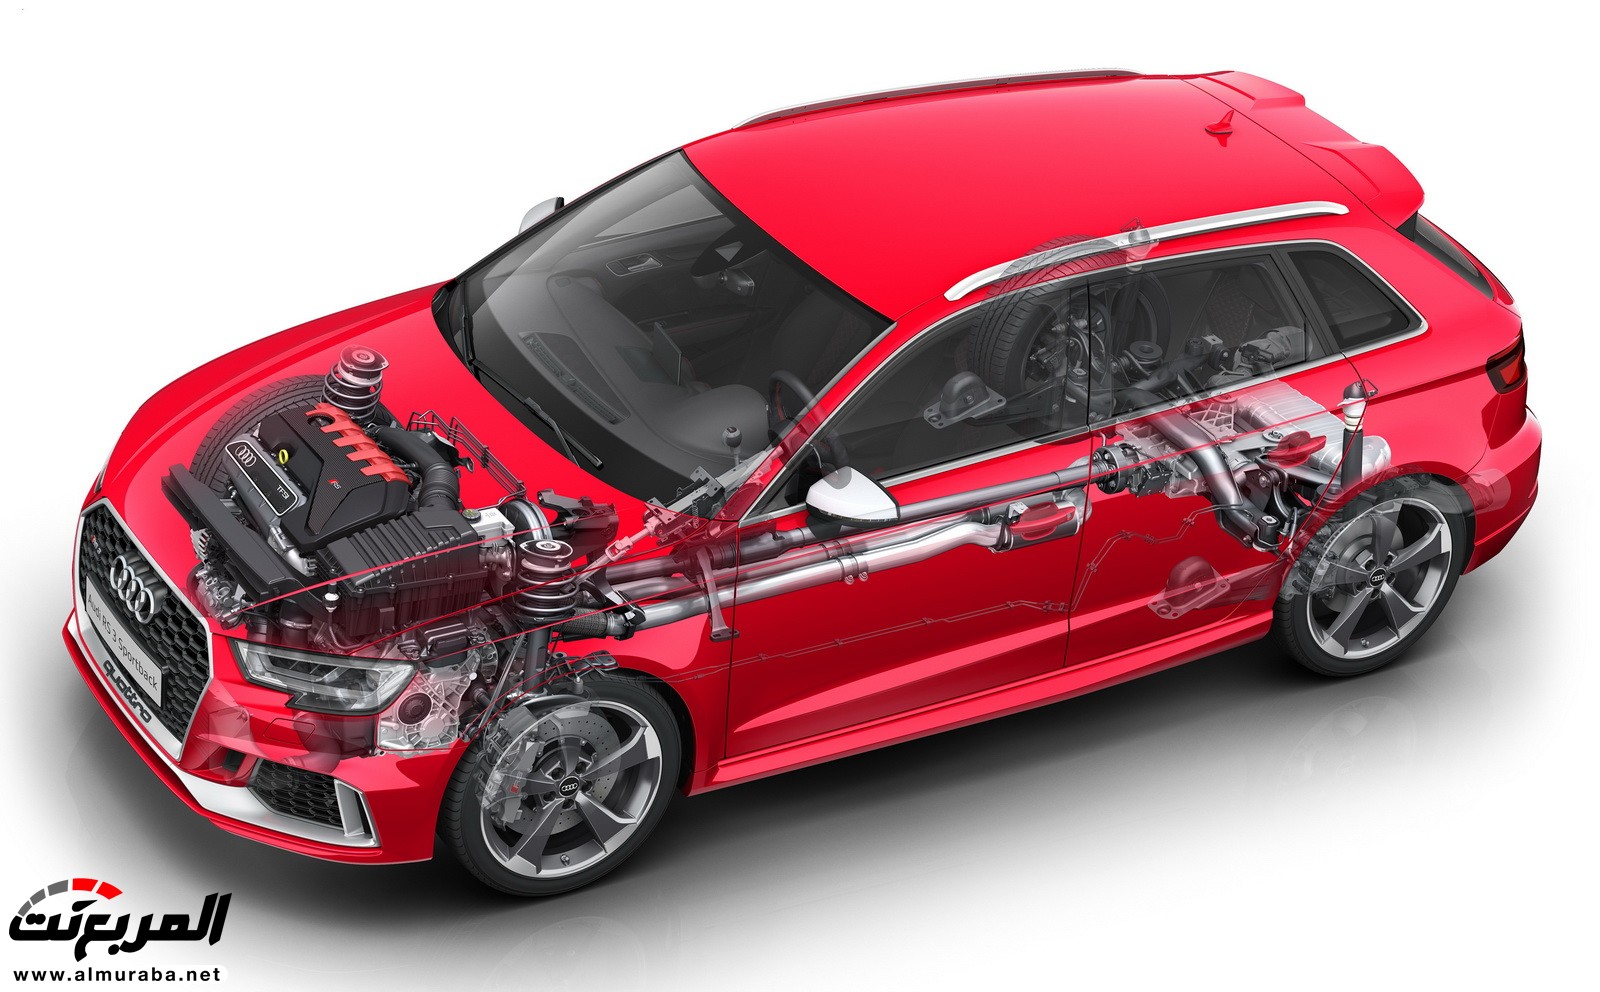 "أودي" تكشف عن RS3 الجديدة كليا 2018 بقوة 395 حصان Audi 47